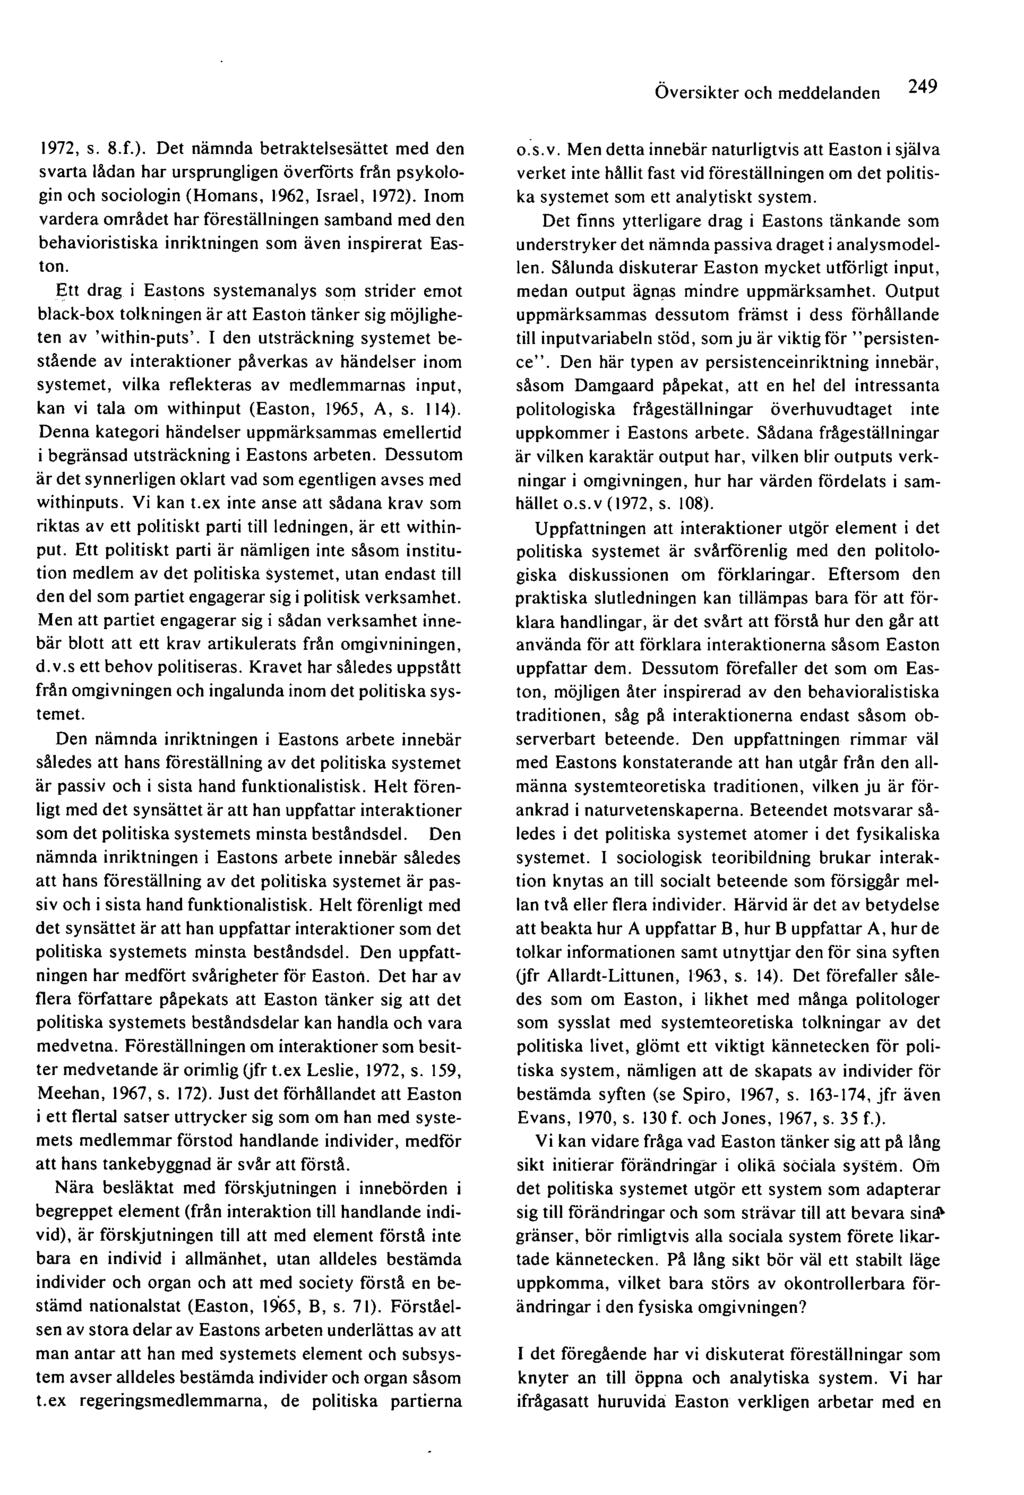 Översikter och meddelanden 1972, s. 8.f.). Det nämnda betraktelsesättet med den svarta lådan har ursprungligen överförts från psykologin och sociologin (Hörnans, 1962, Israel, 1972).